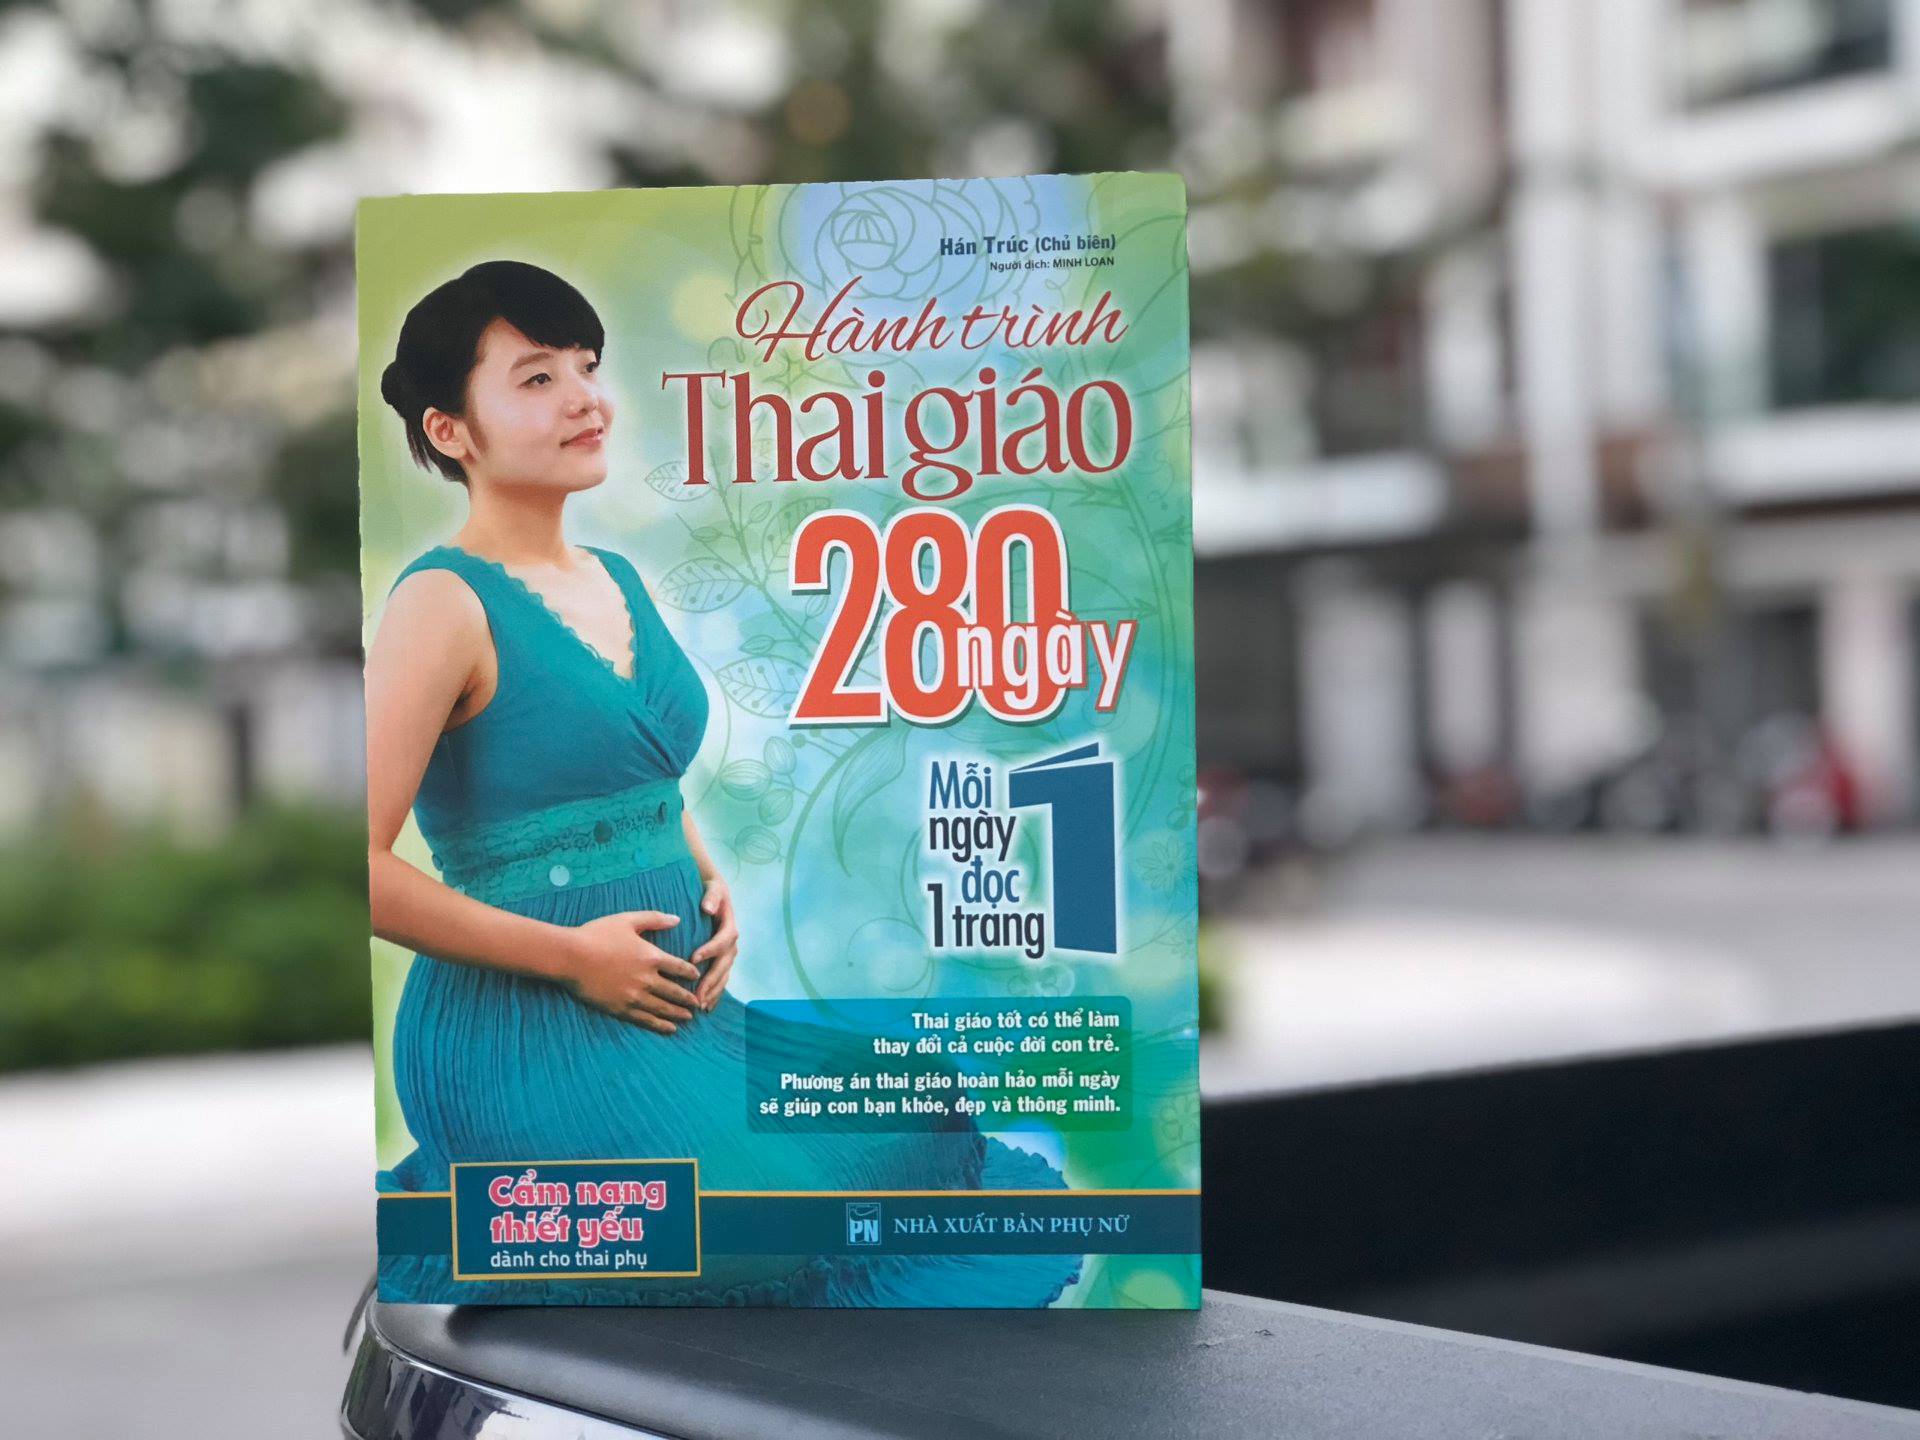 sách thai giáo cho mẹ 280 ngày mỗi ngày đọc 1 trang